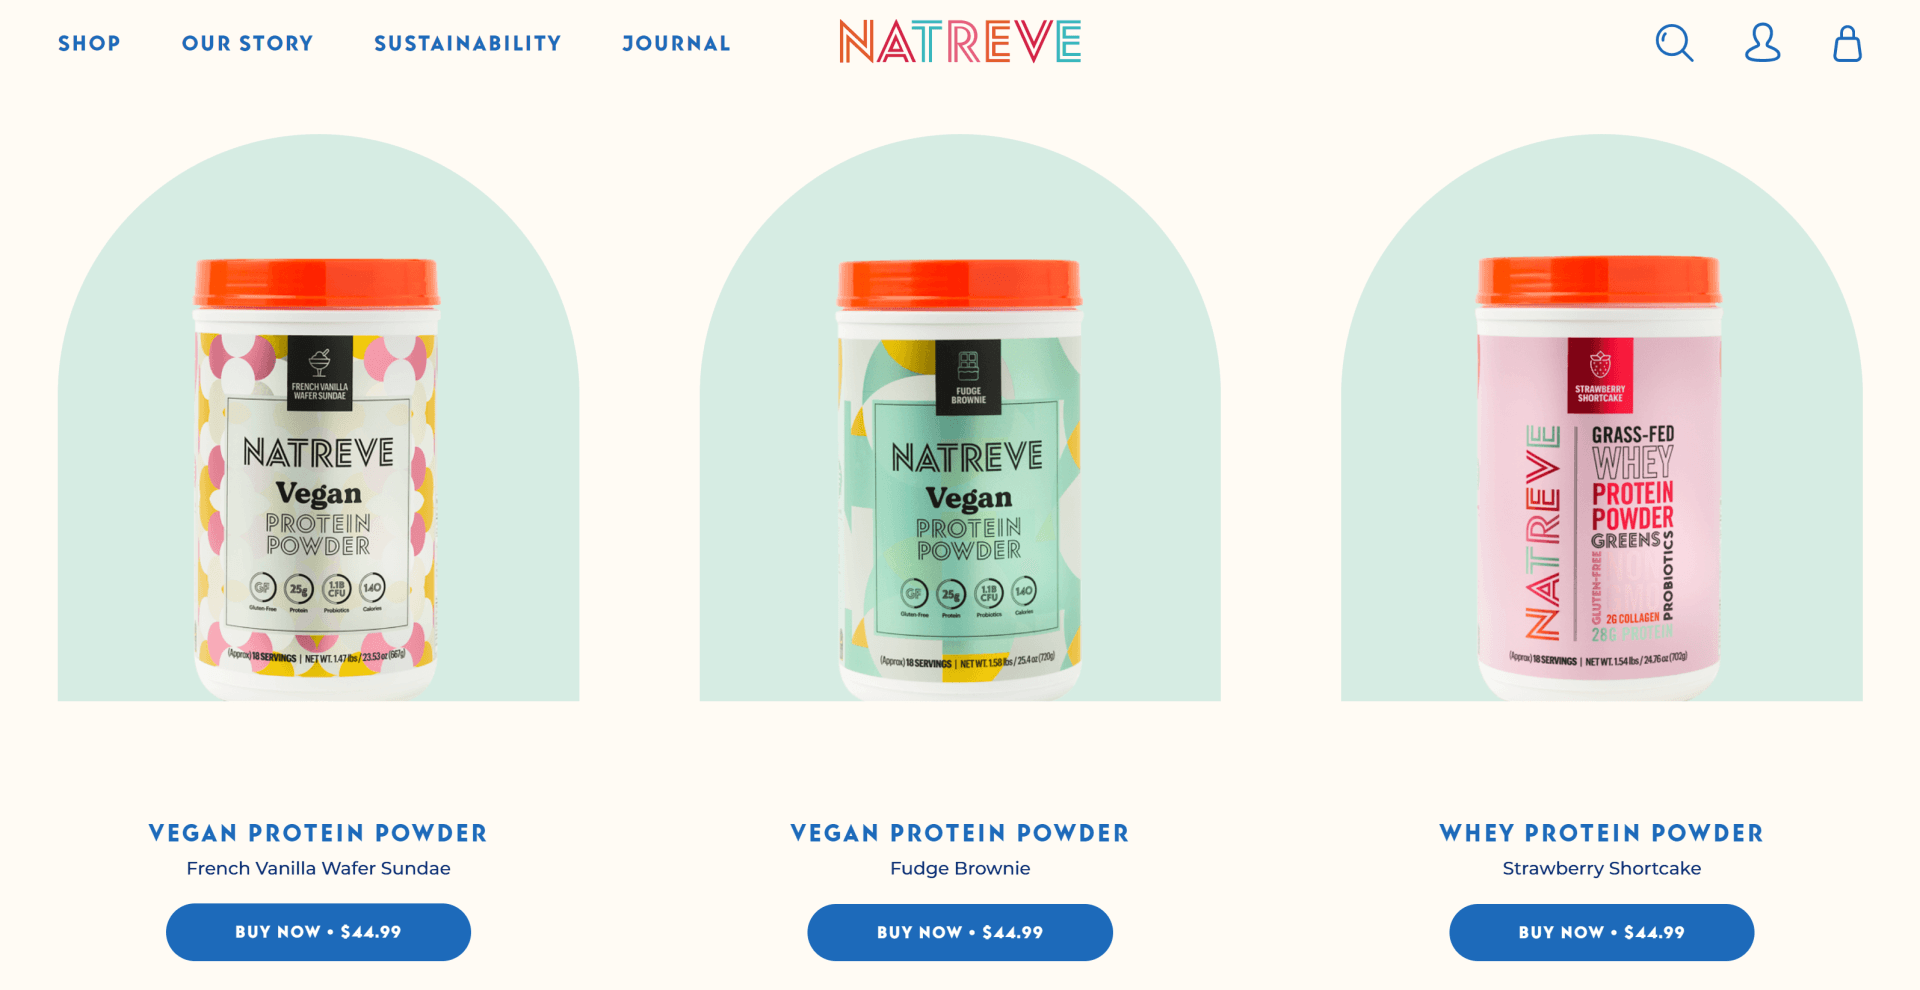 Image of 3 bottles containing vegan protein powder